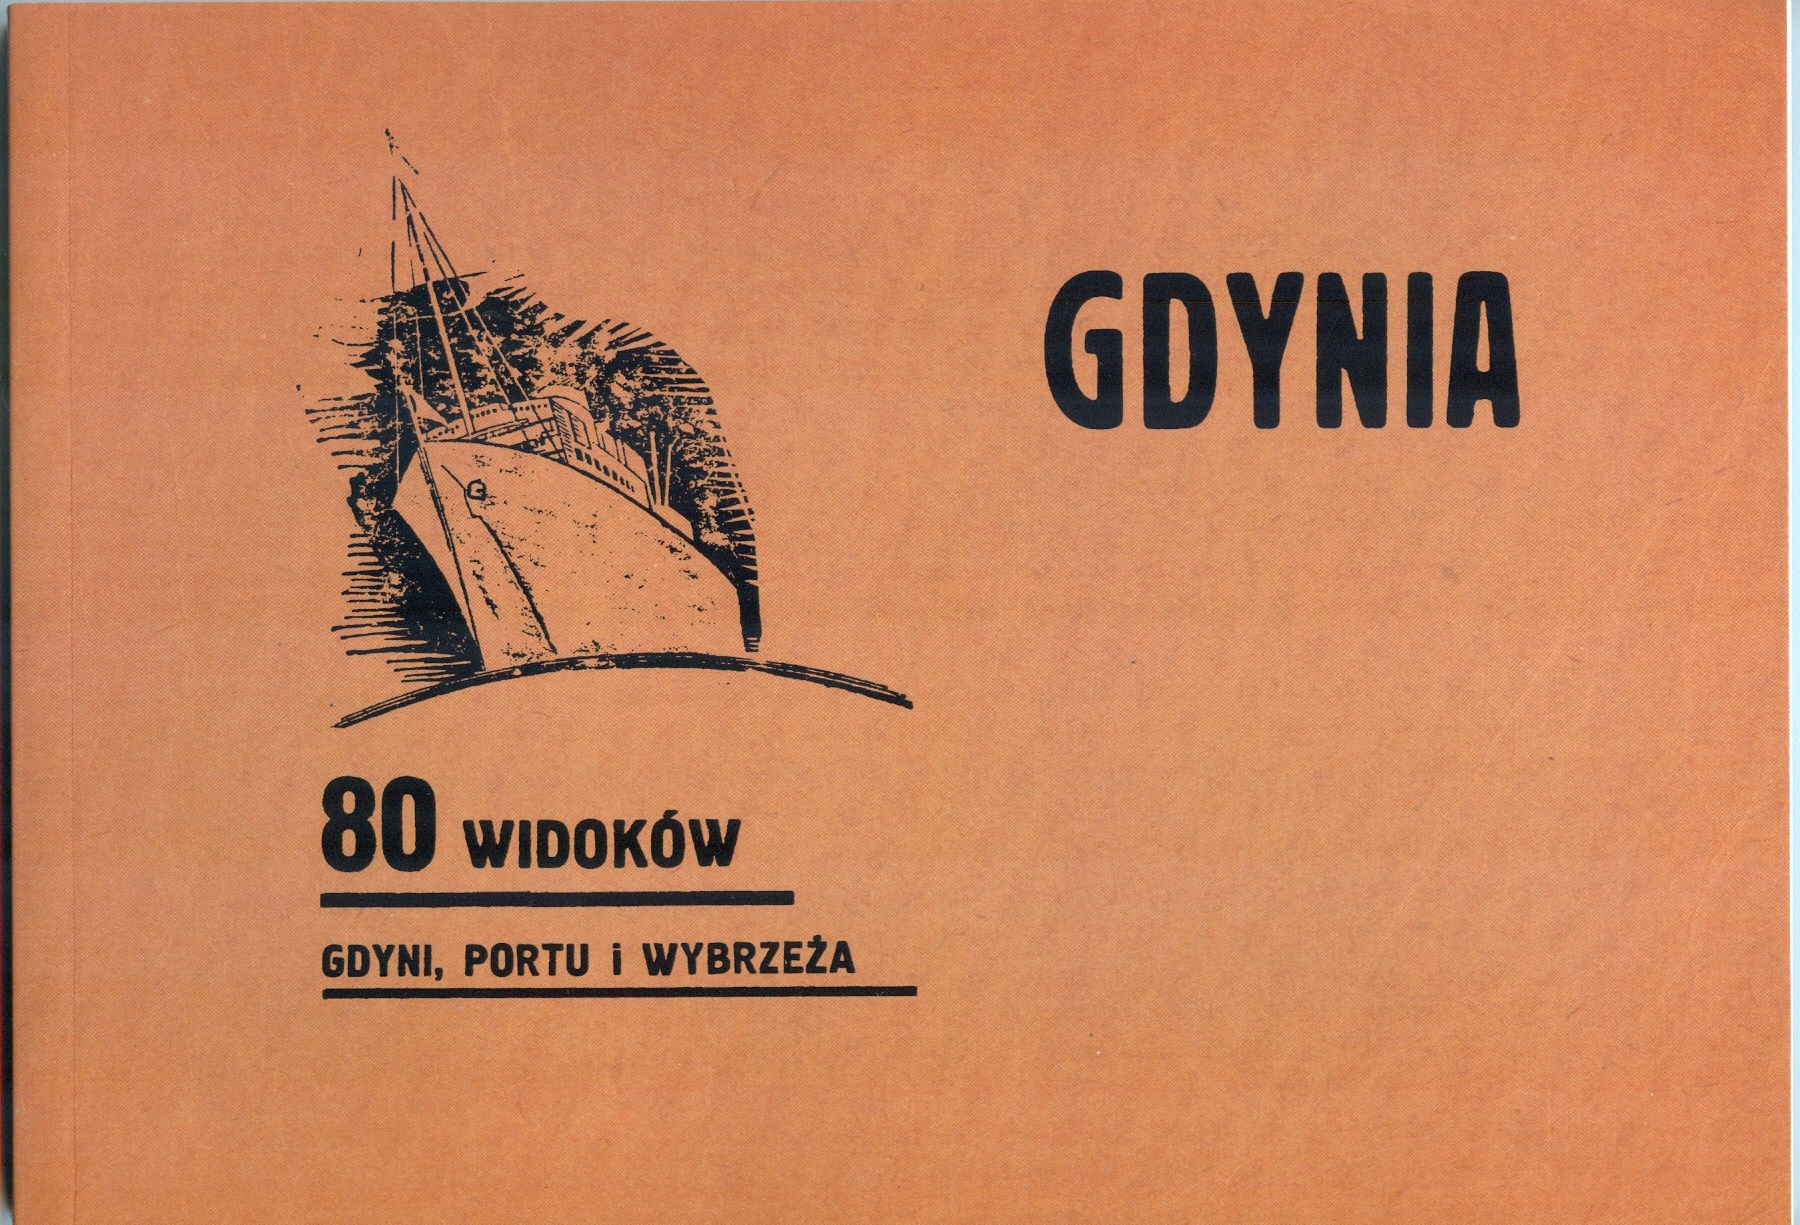 Gdynia: 80 widoków Gdyni, Portu i Wybrzeża.